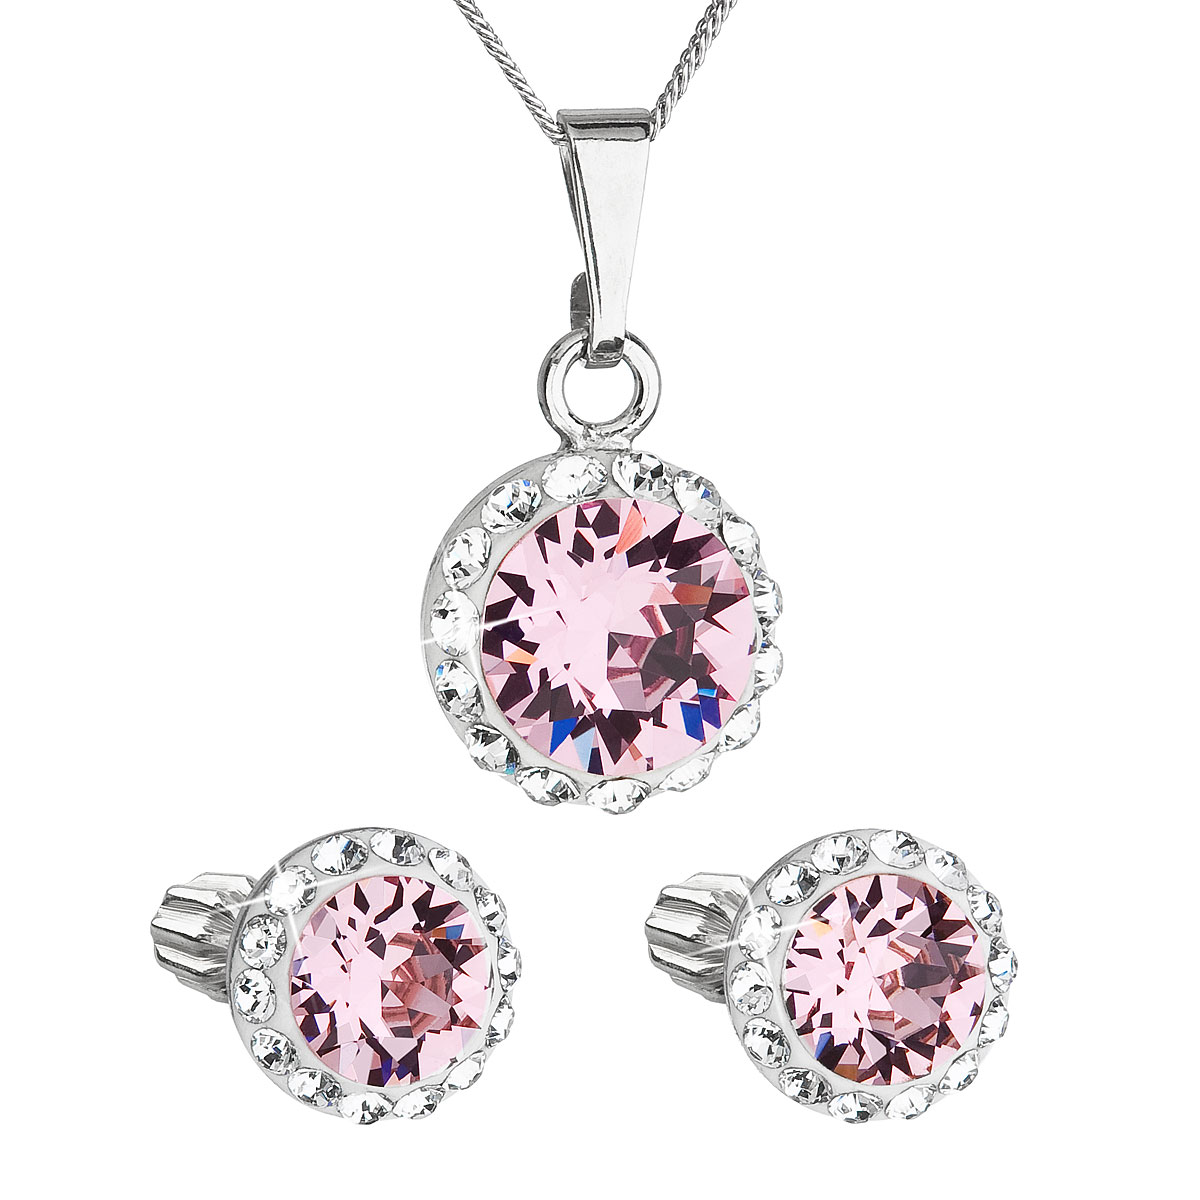 Evolution Group Sada šperků s krystaly Swarovski náušnice, řetízek a přívěsek růžové kulaté 39352.3 light rose